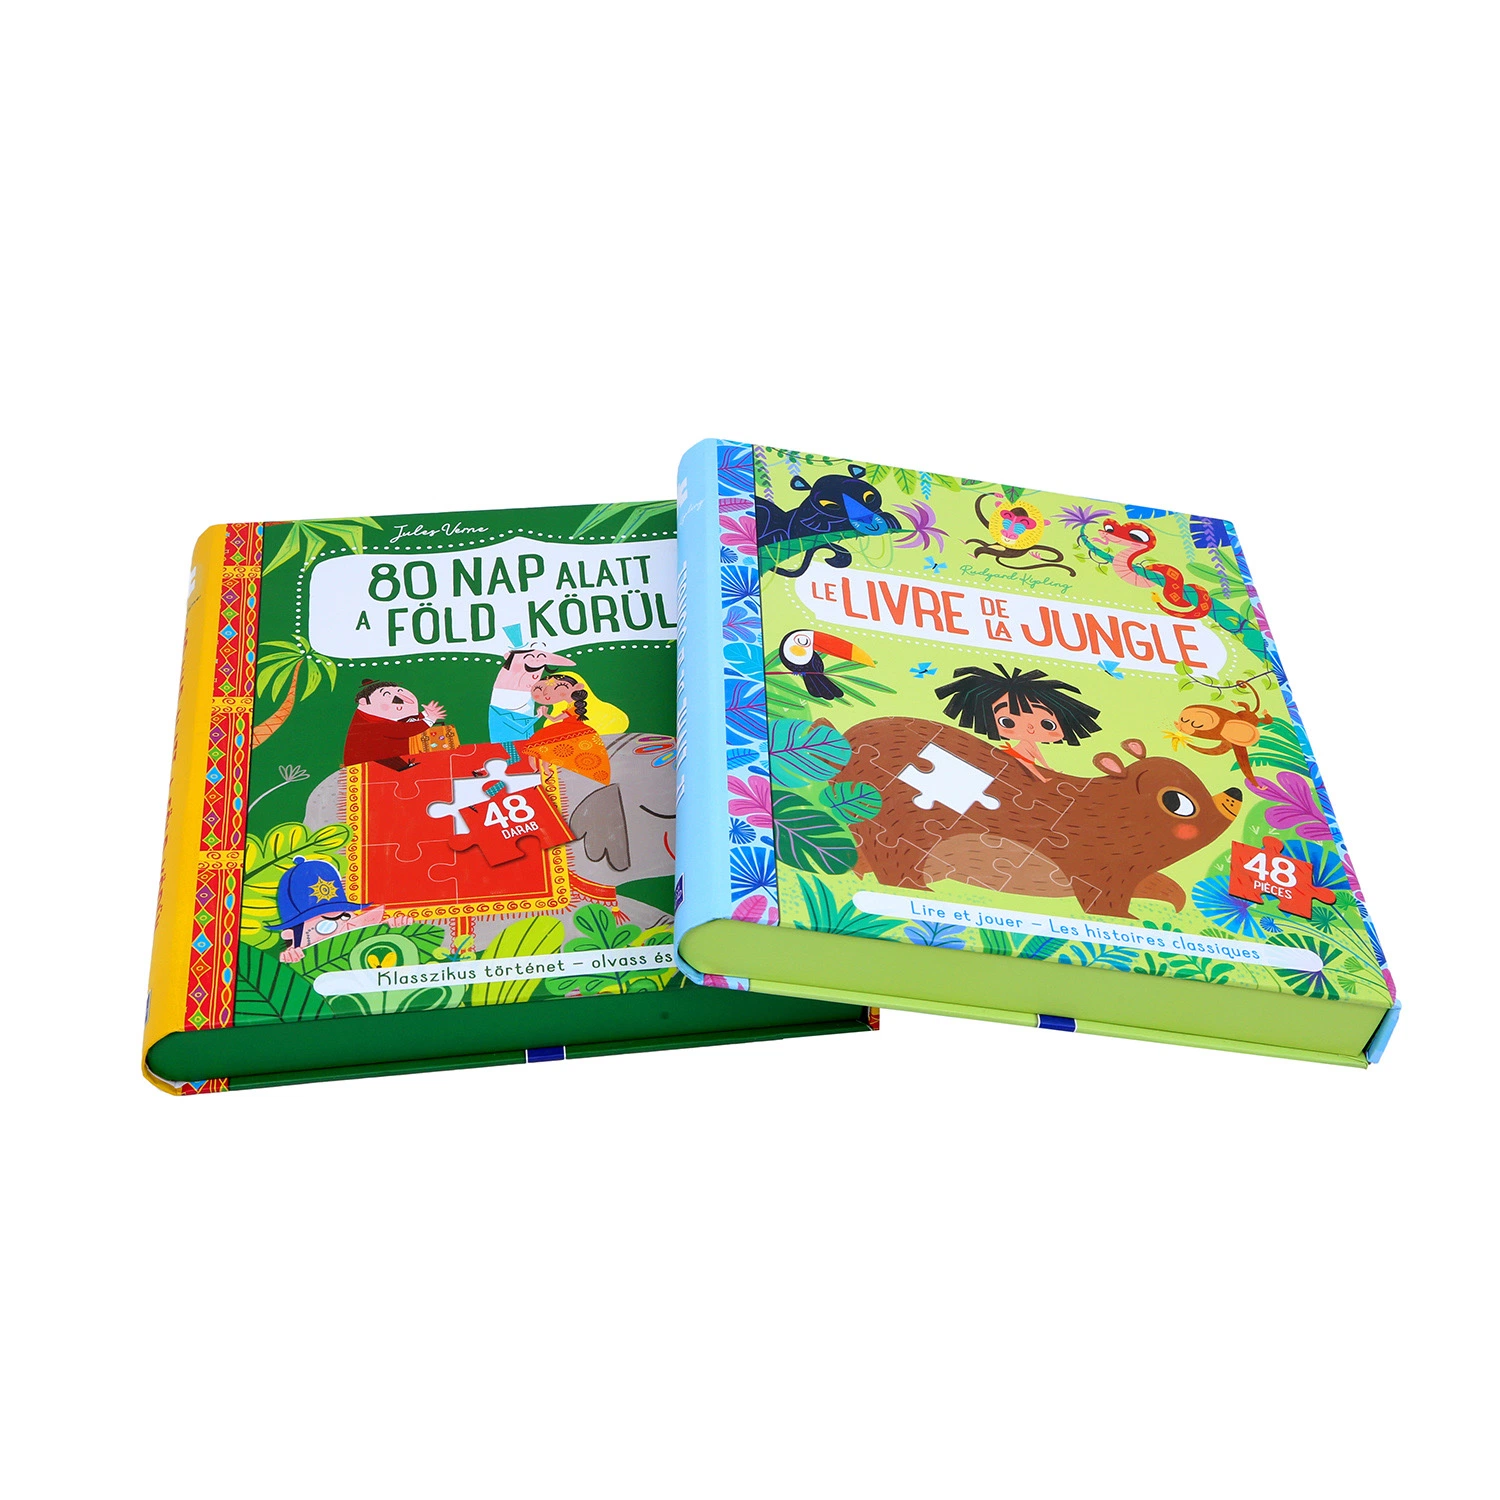 Conjunto de livros infantis e impressão de caixas